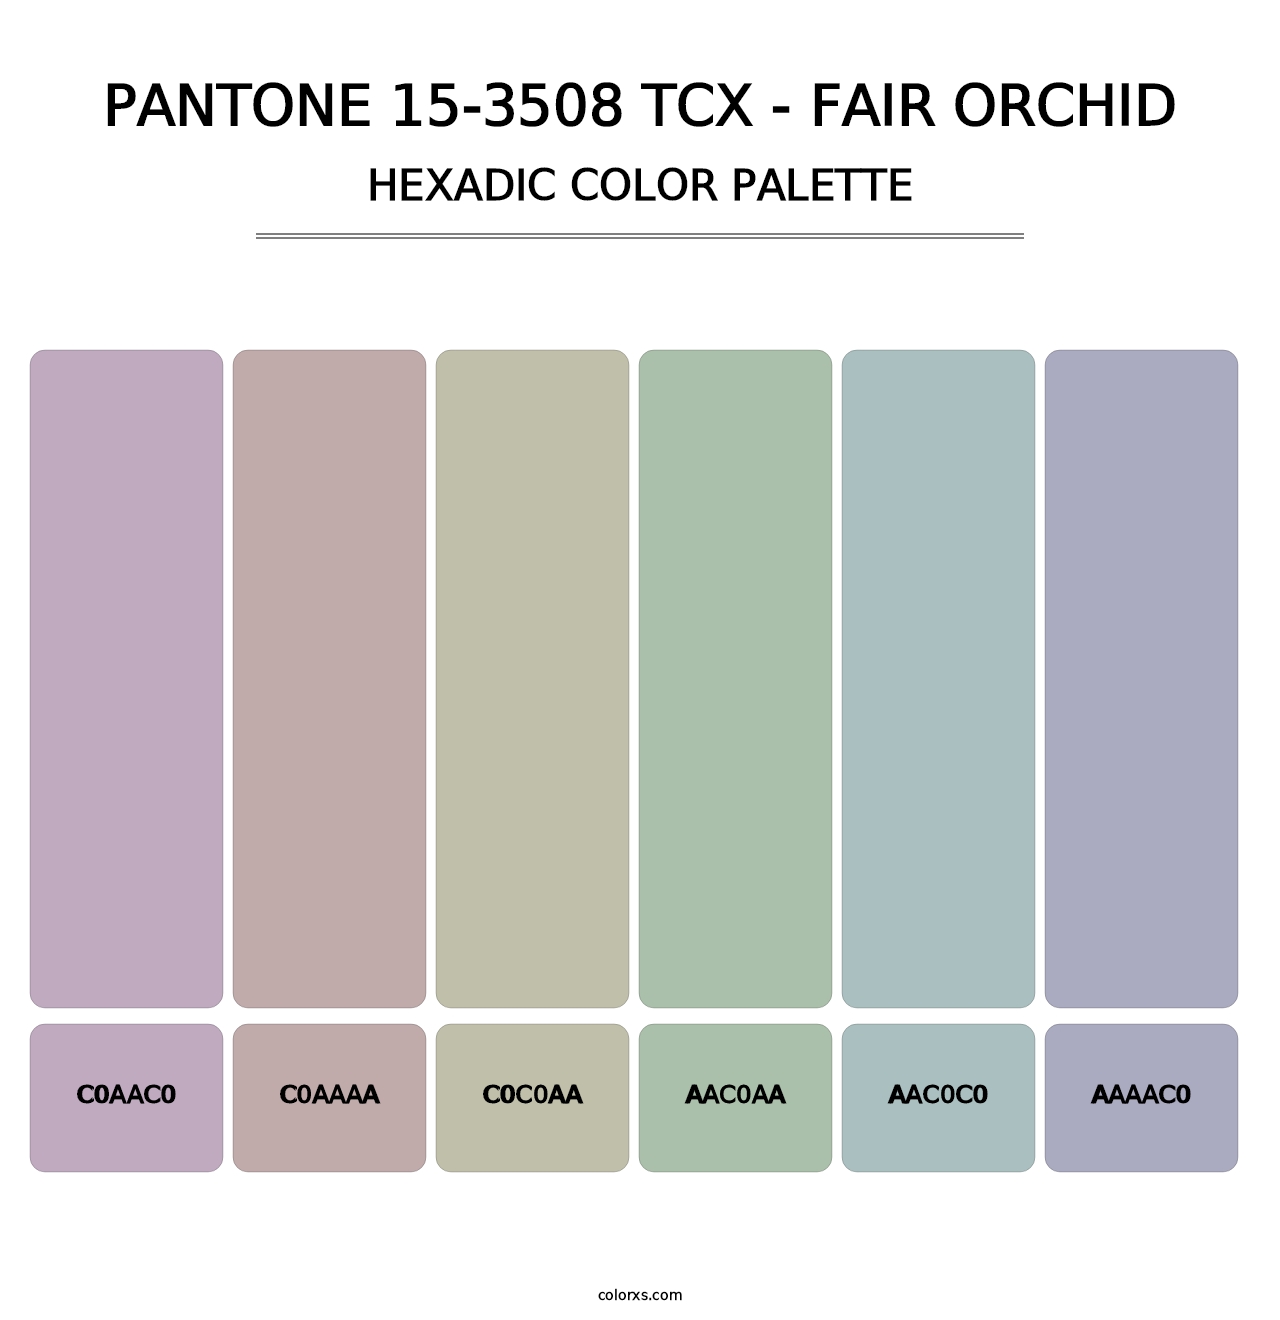 PANTONE 15-3508 TCX - Fair Orchid - Hexadic Color Palette